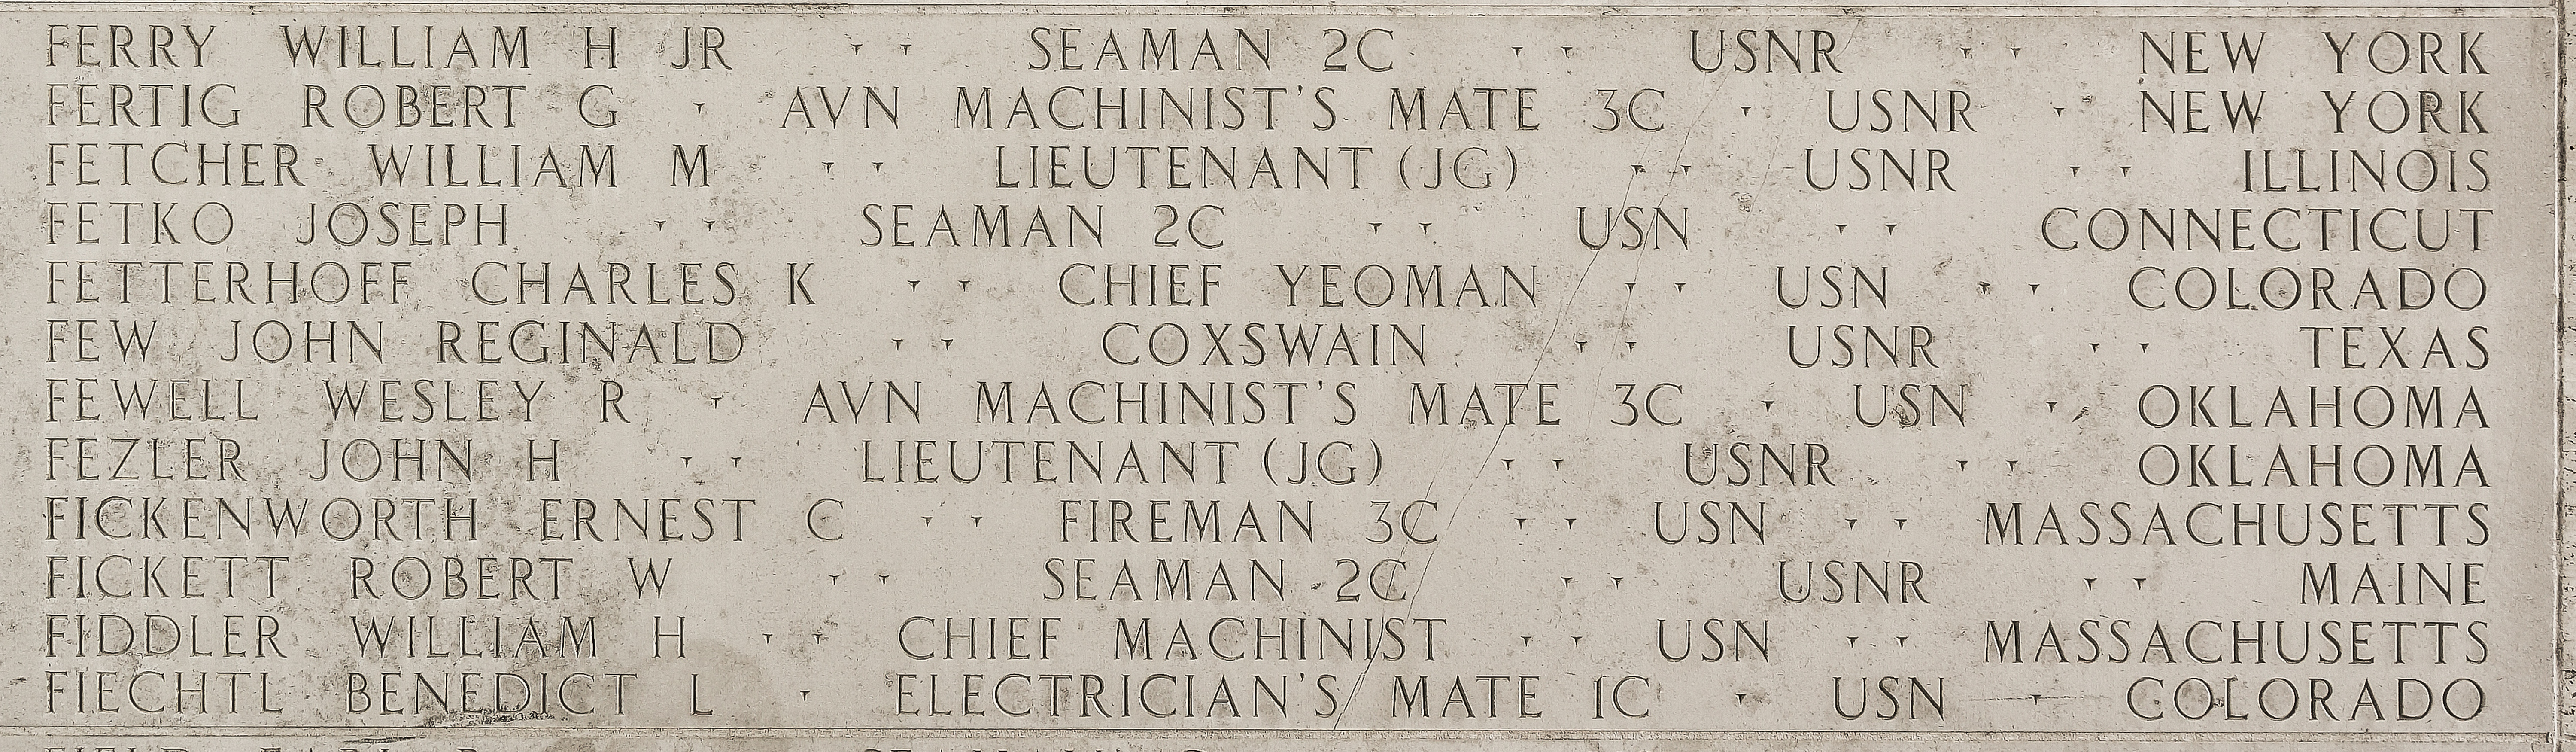 William M. Fetcher, Lieutenant Junior Grade